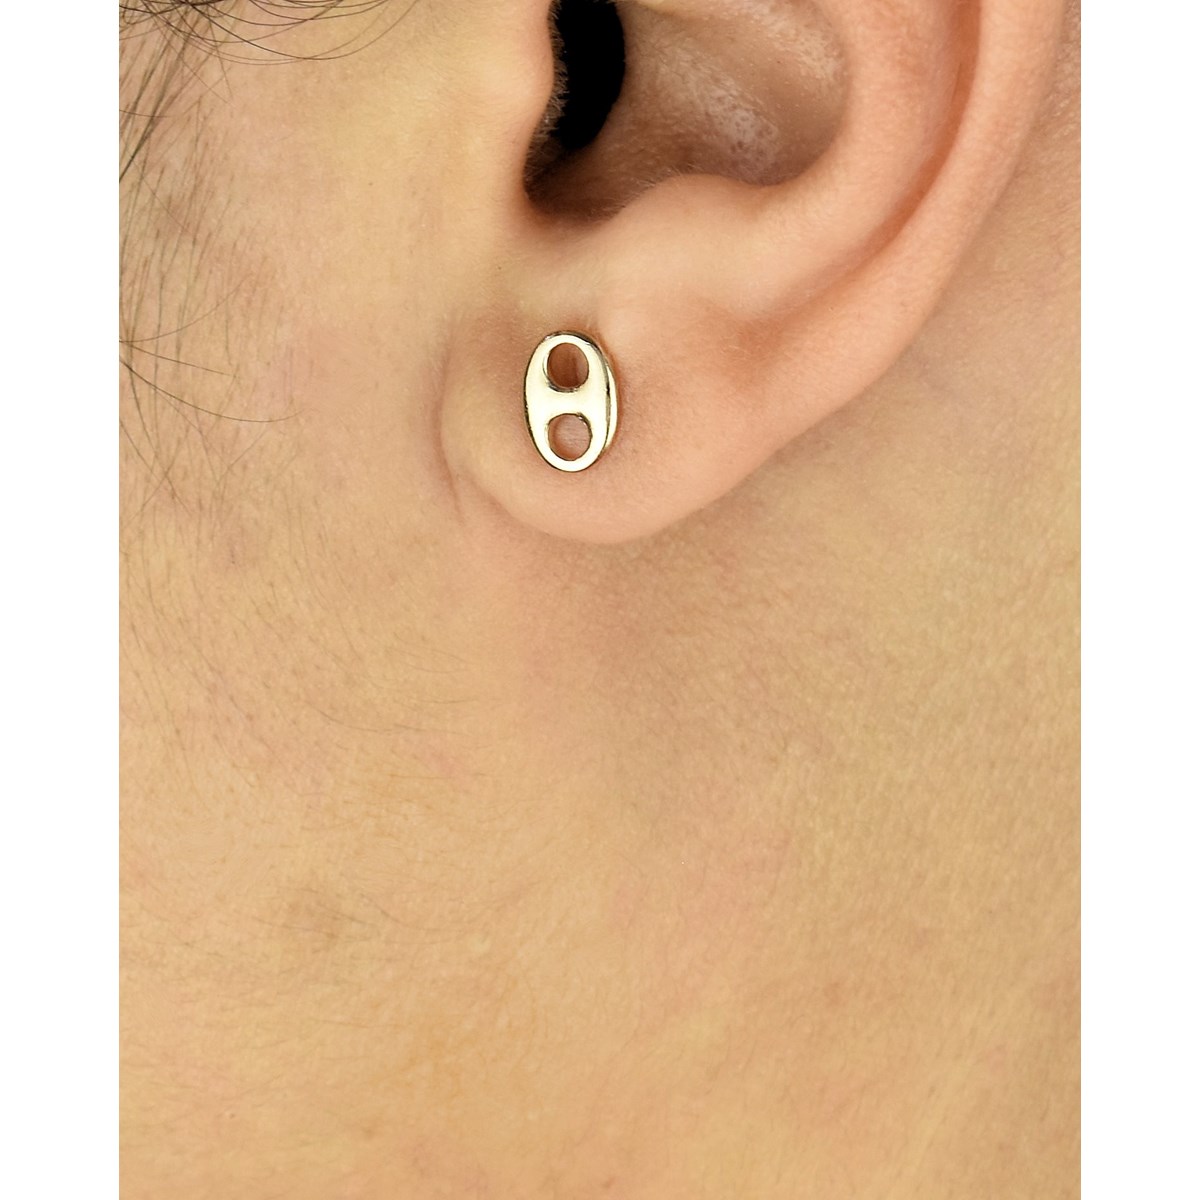 Boucles d'oreilles grain de café Plaqué OR 750 3 microns - vue 2